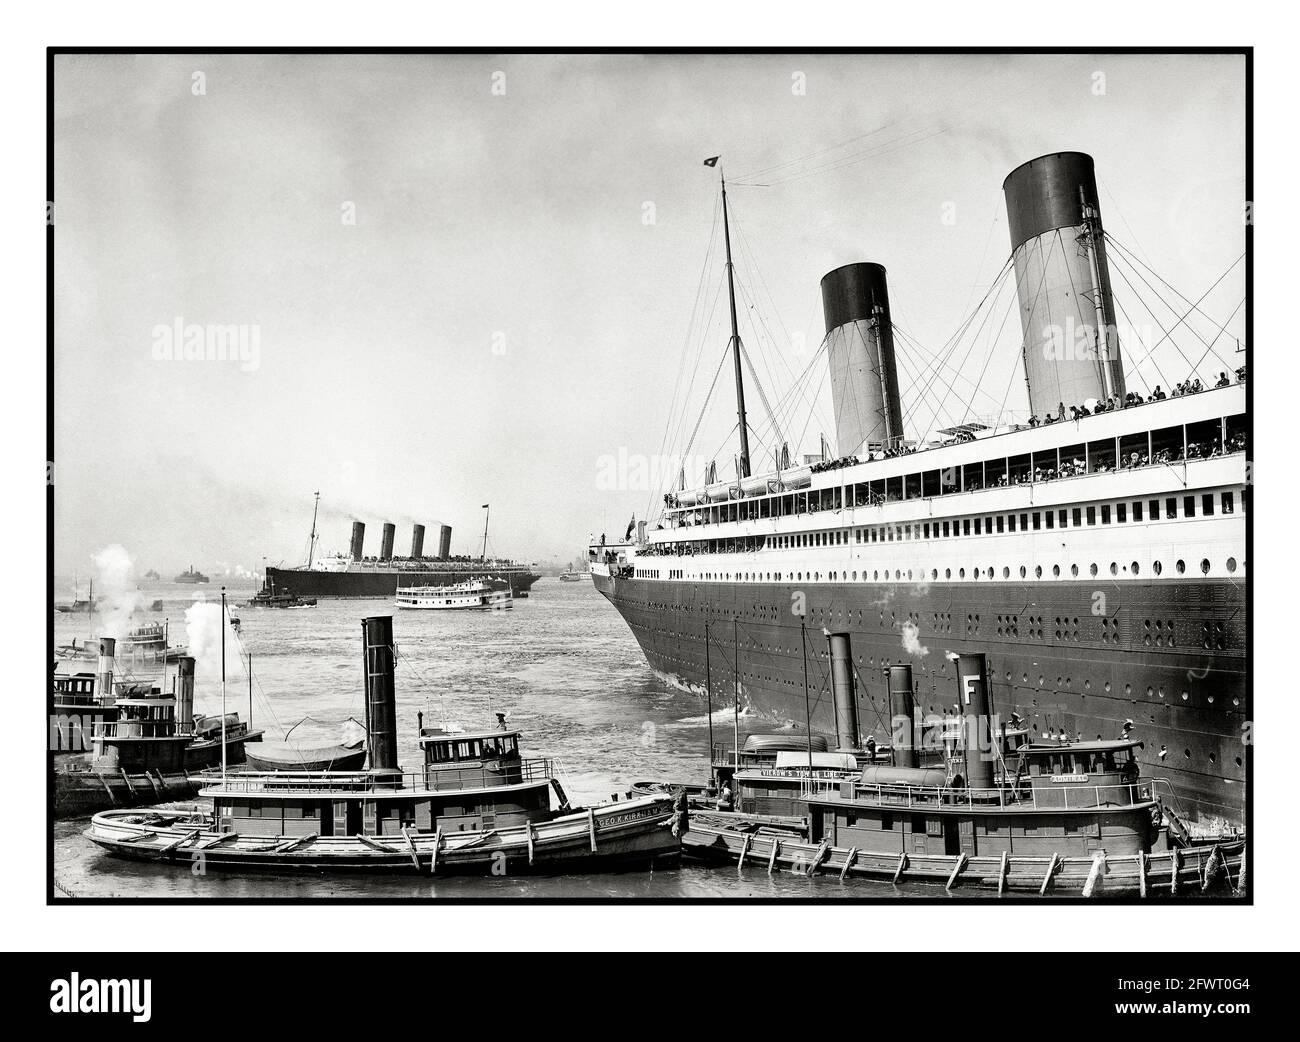 RMS Olympic (le navire jumeau du Titanic) dans le port de New York, 1911. RMS Lusitania, qui serait tragiquement torpillé par un sous-marin allemand voyou quatre ans plus tard avec 1198 pertes de vie, est vu dans le fond des Etats-Unis Banque D'Images